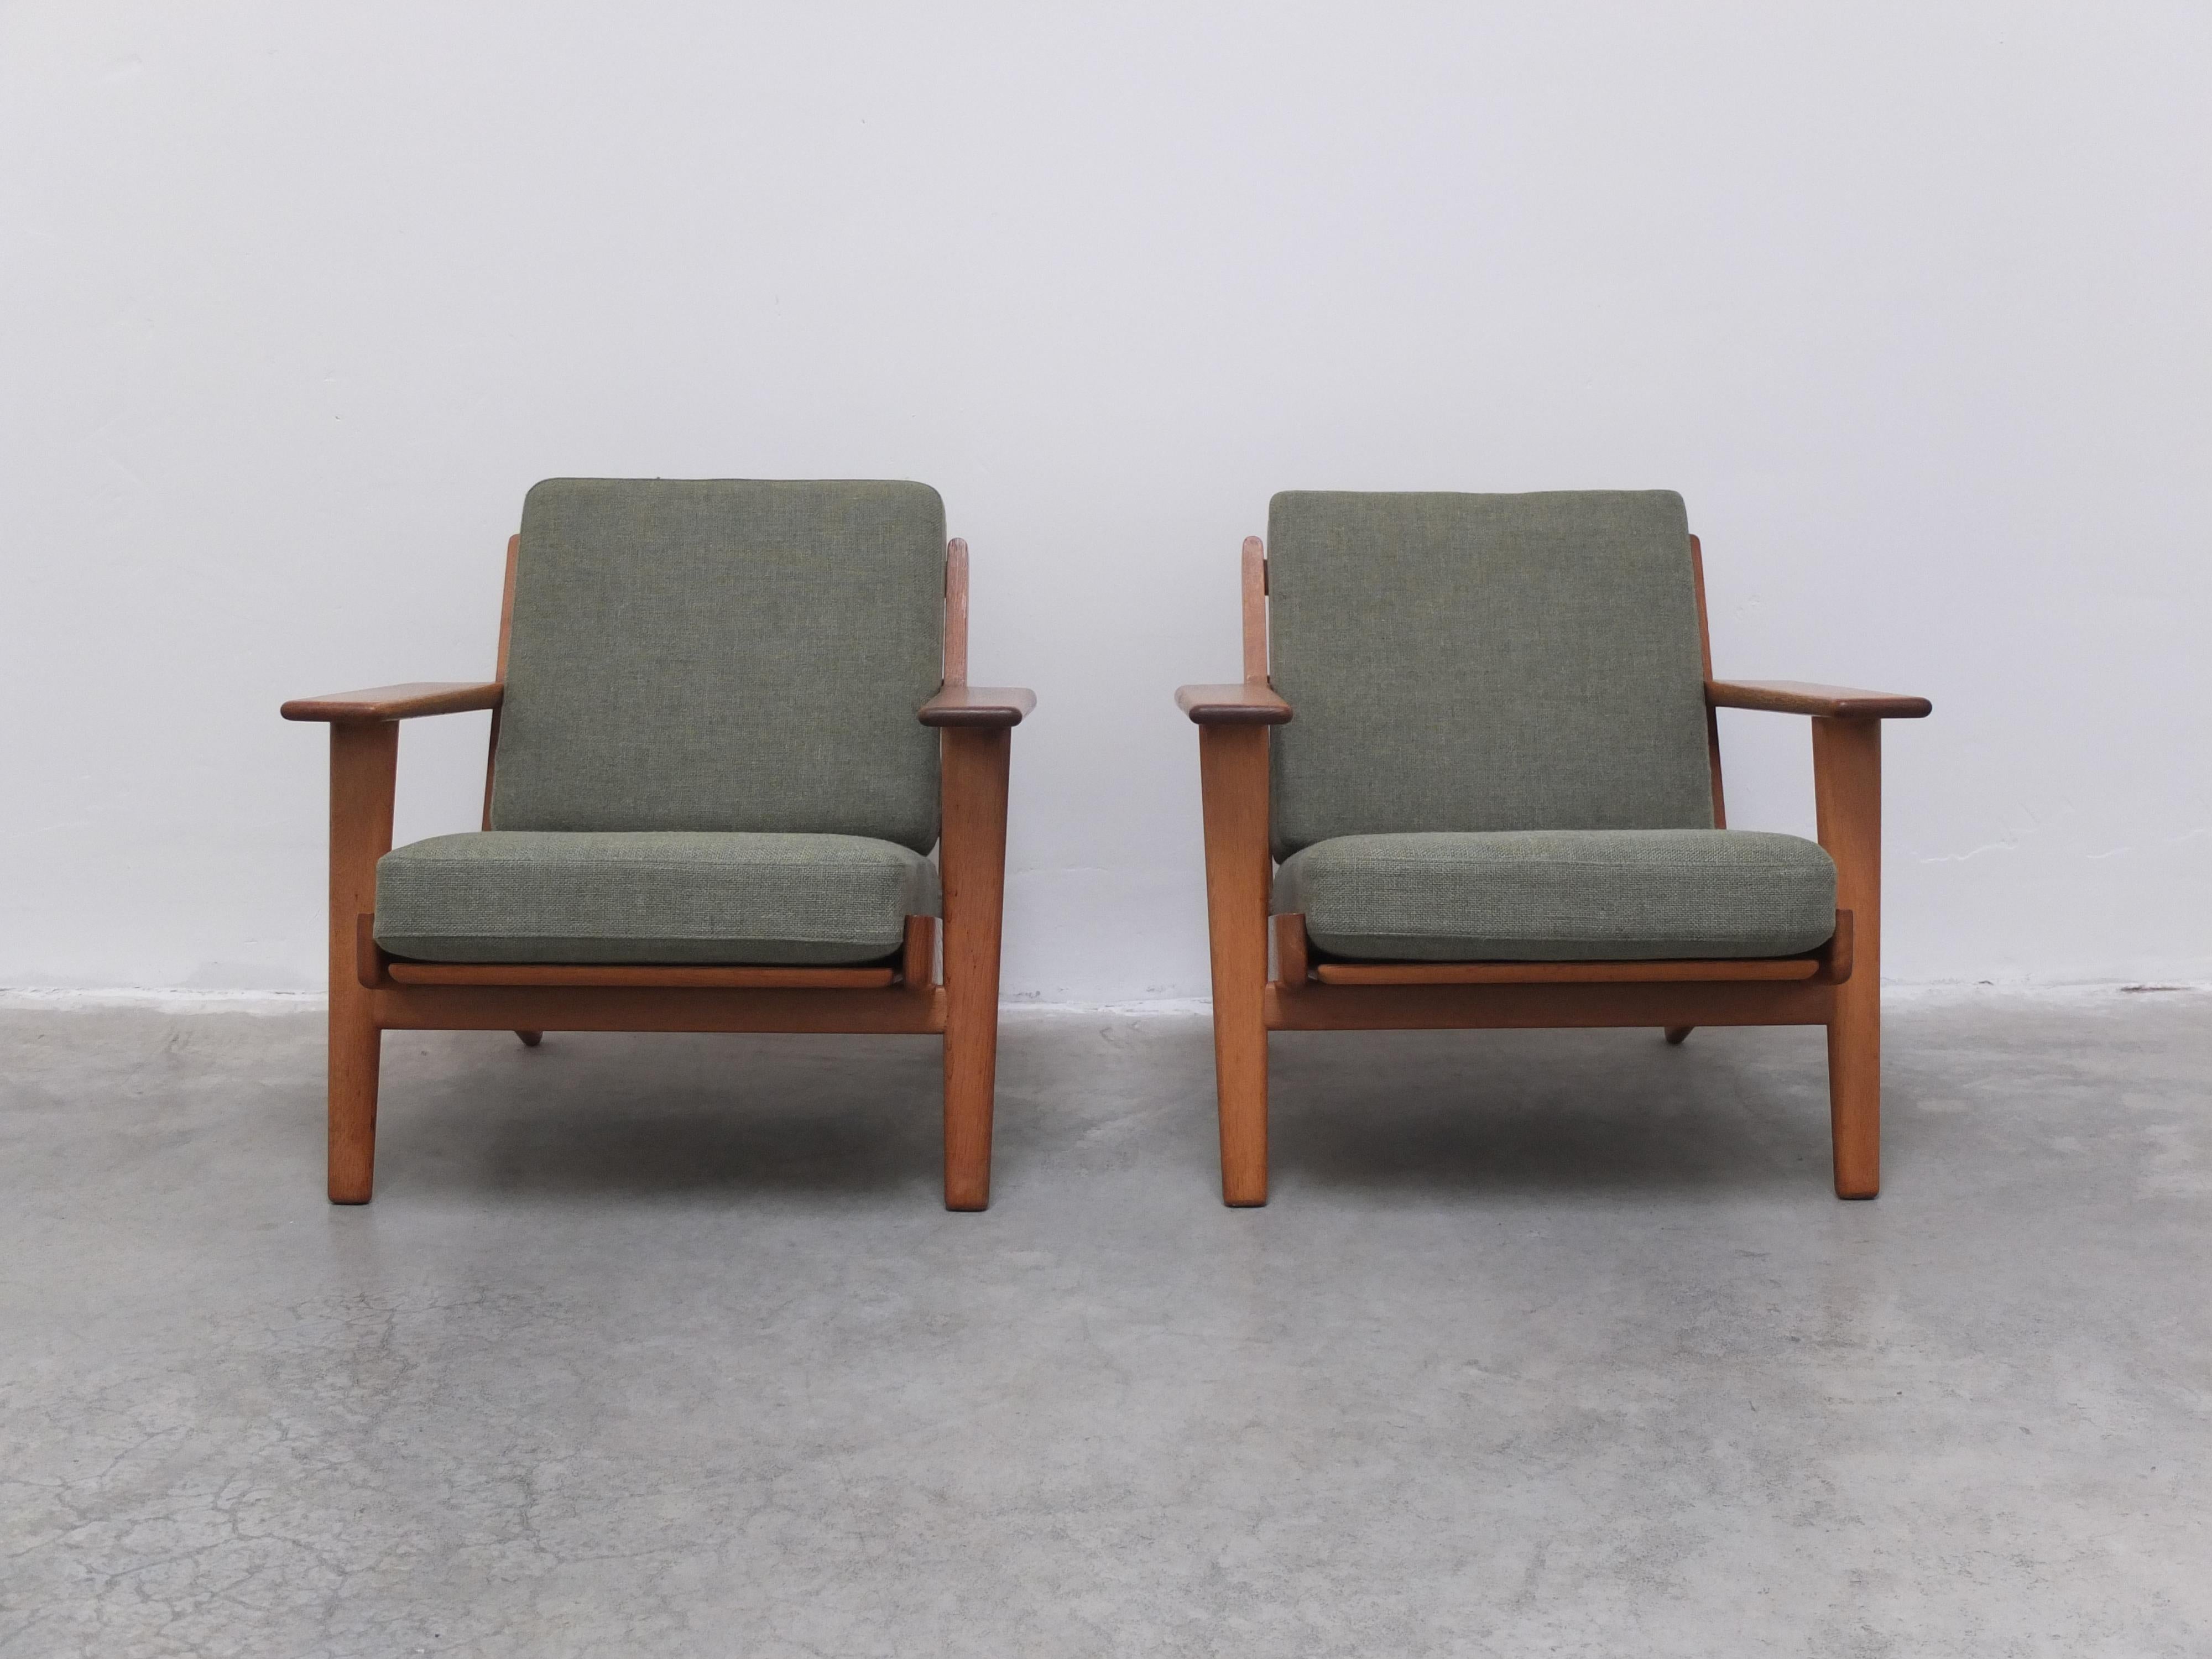 Tout droit venue du Danemark, cette paire originale de chaises longues a été conçue en 1953 par le maître lui-même, Hans J. Wegner. Il s'agit du modèle 